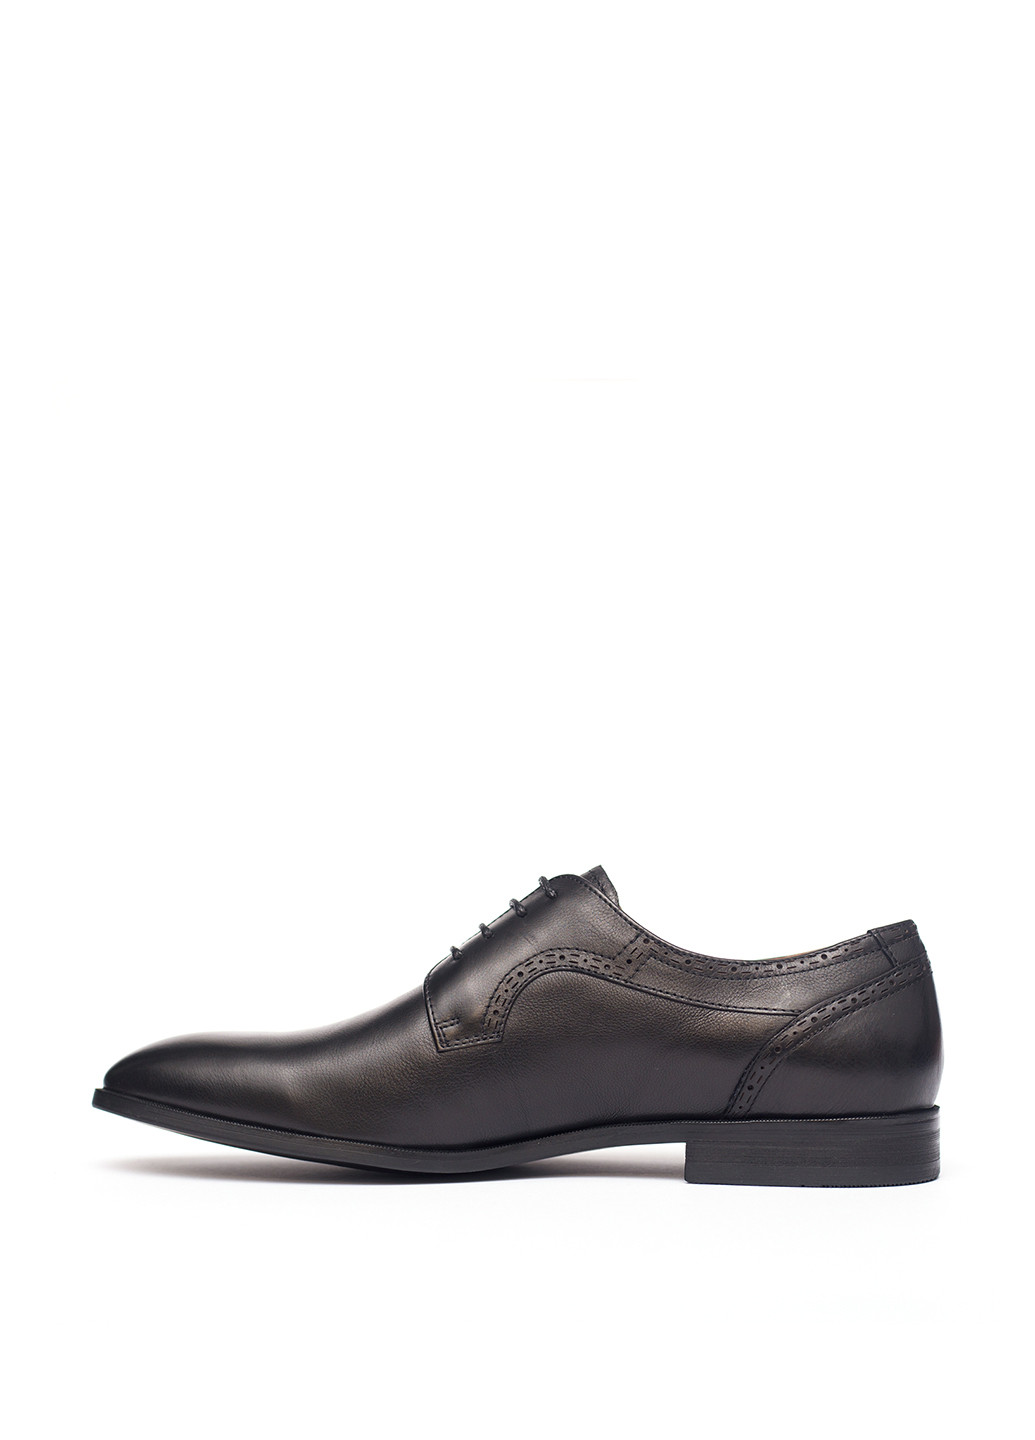 Черные классические туфли Lido Marinozzi на шнурках